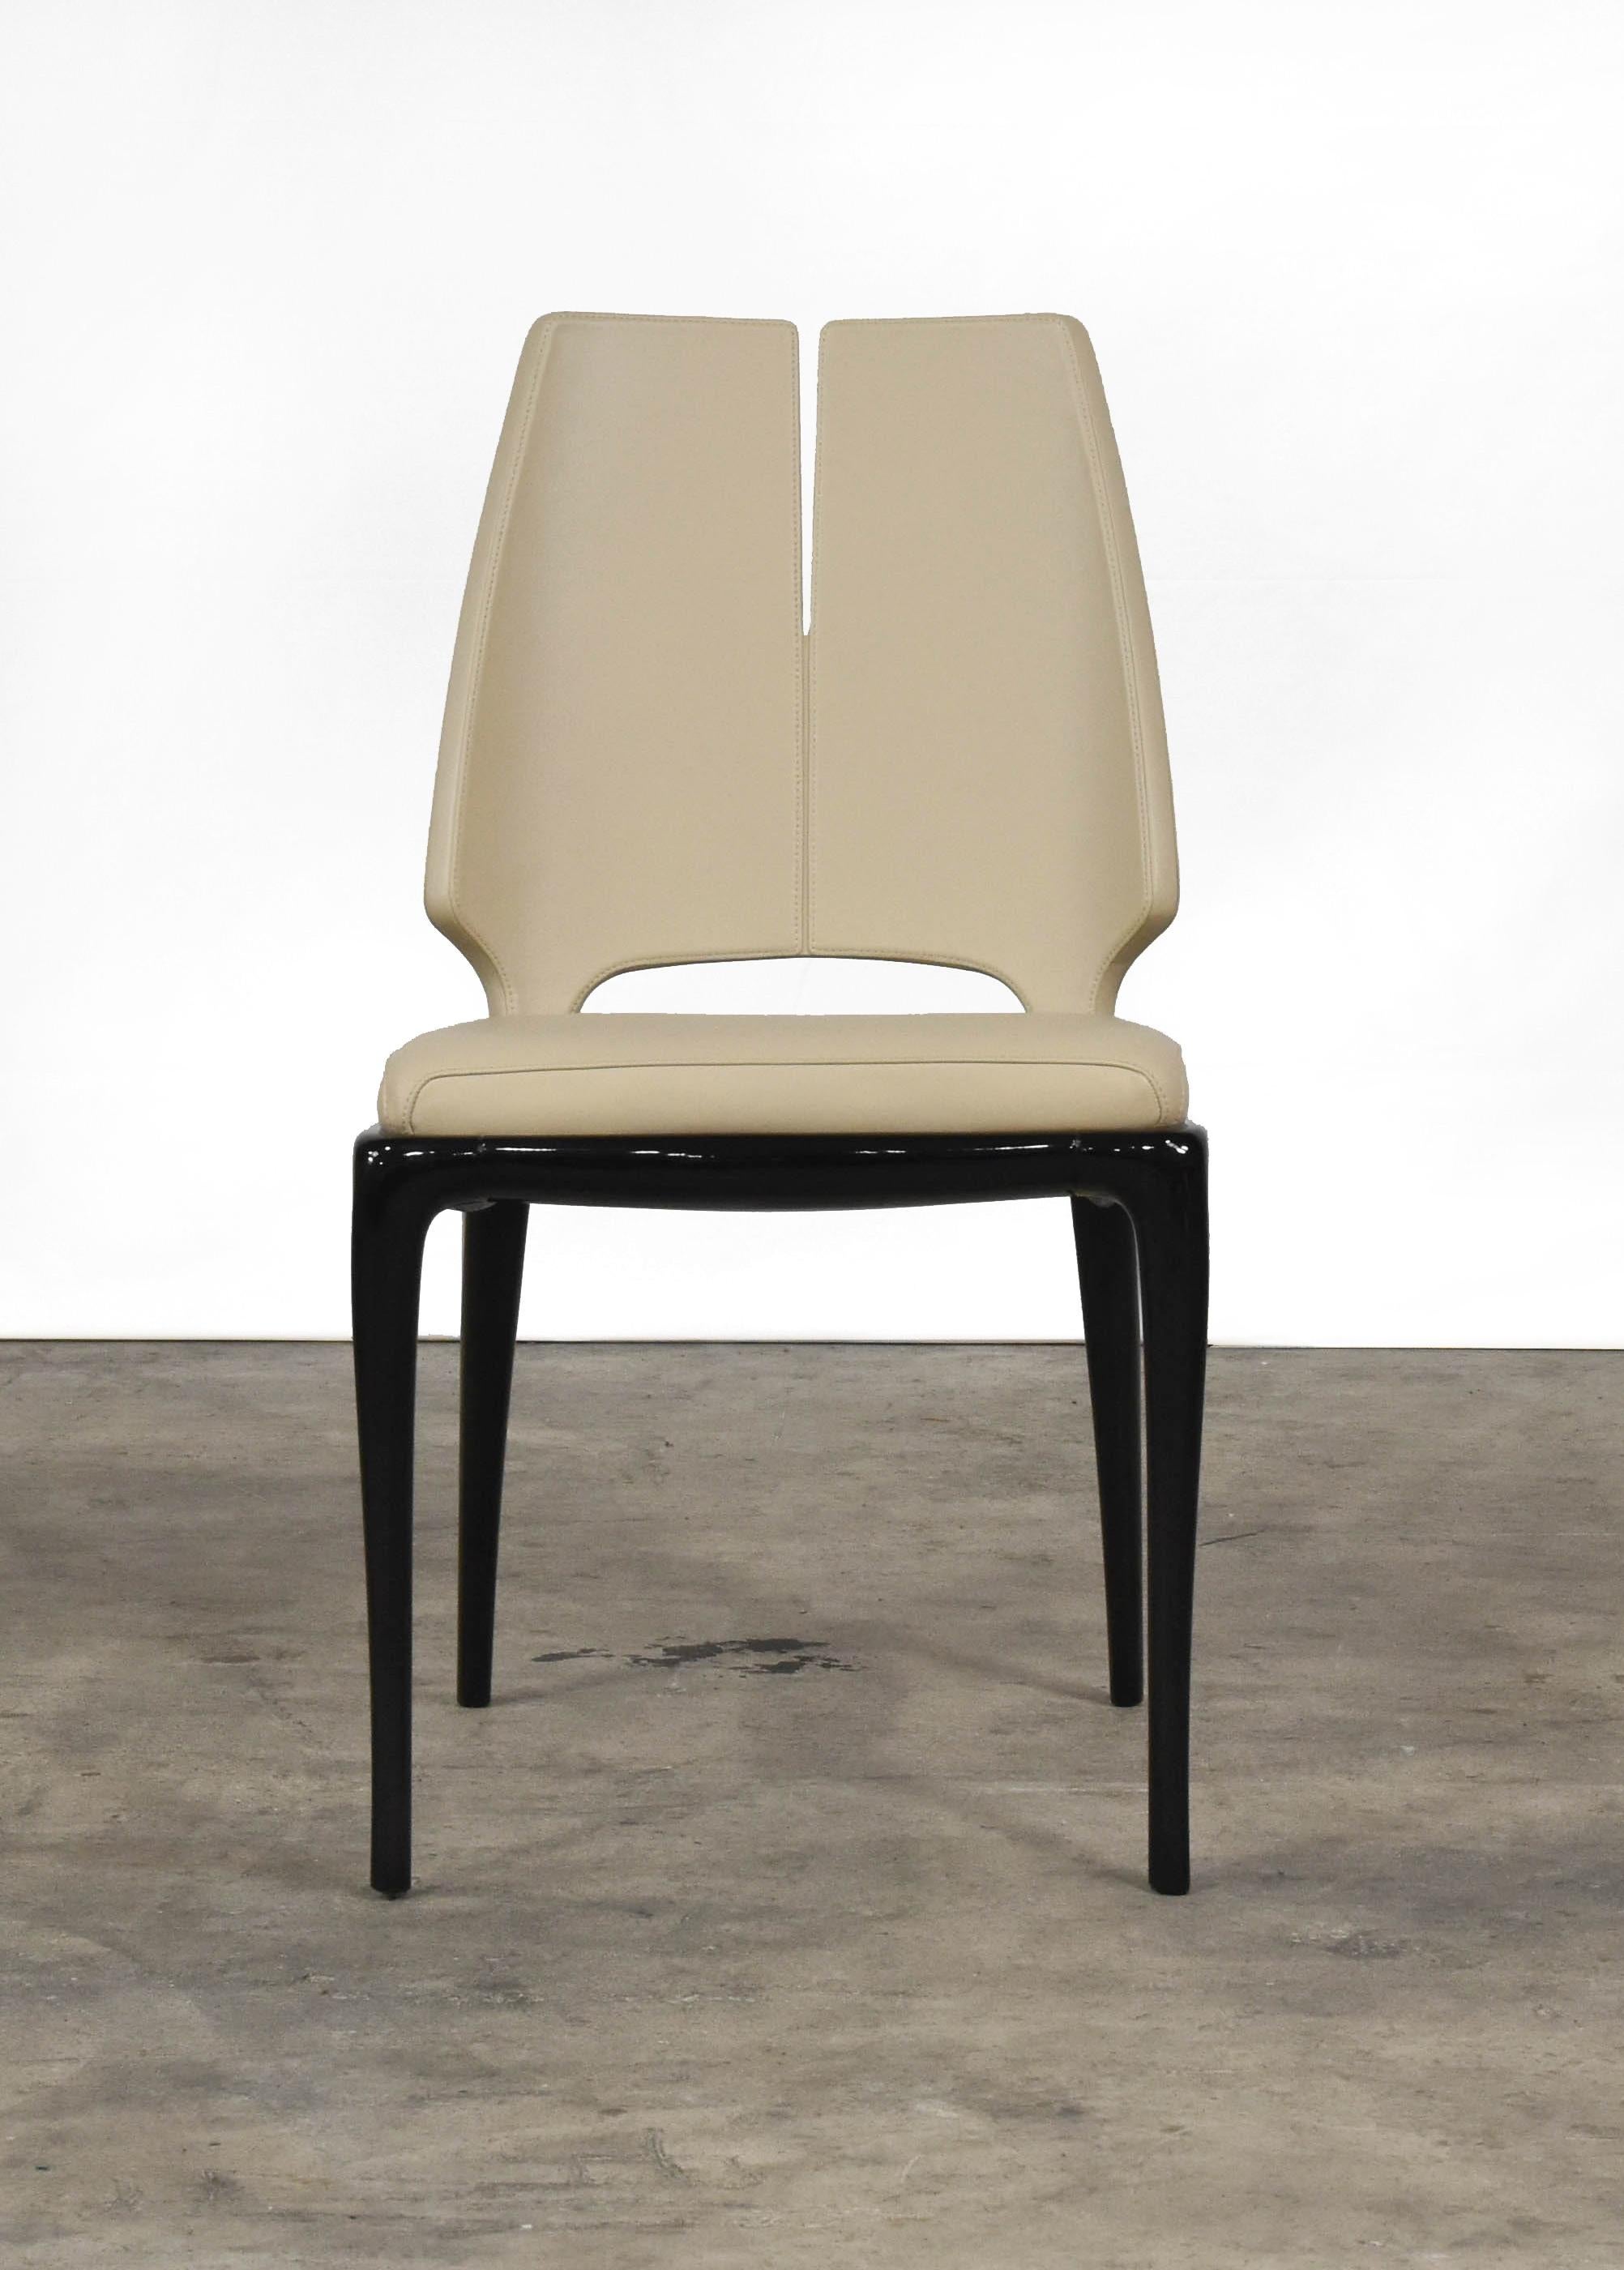 Élancée et raffinée, la chaise contour de Paul Mathieu pour Luxury Living associe un esprit sobre à un goût contemporain. Réalisé en bois laqué, il abrite le coussin d'assise en cuir beige, assorti à la
rembourrage du dossier de siège.